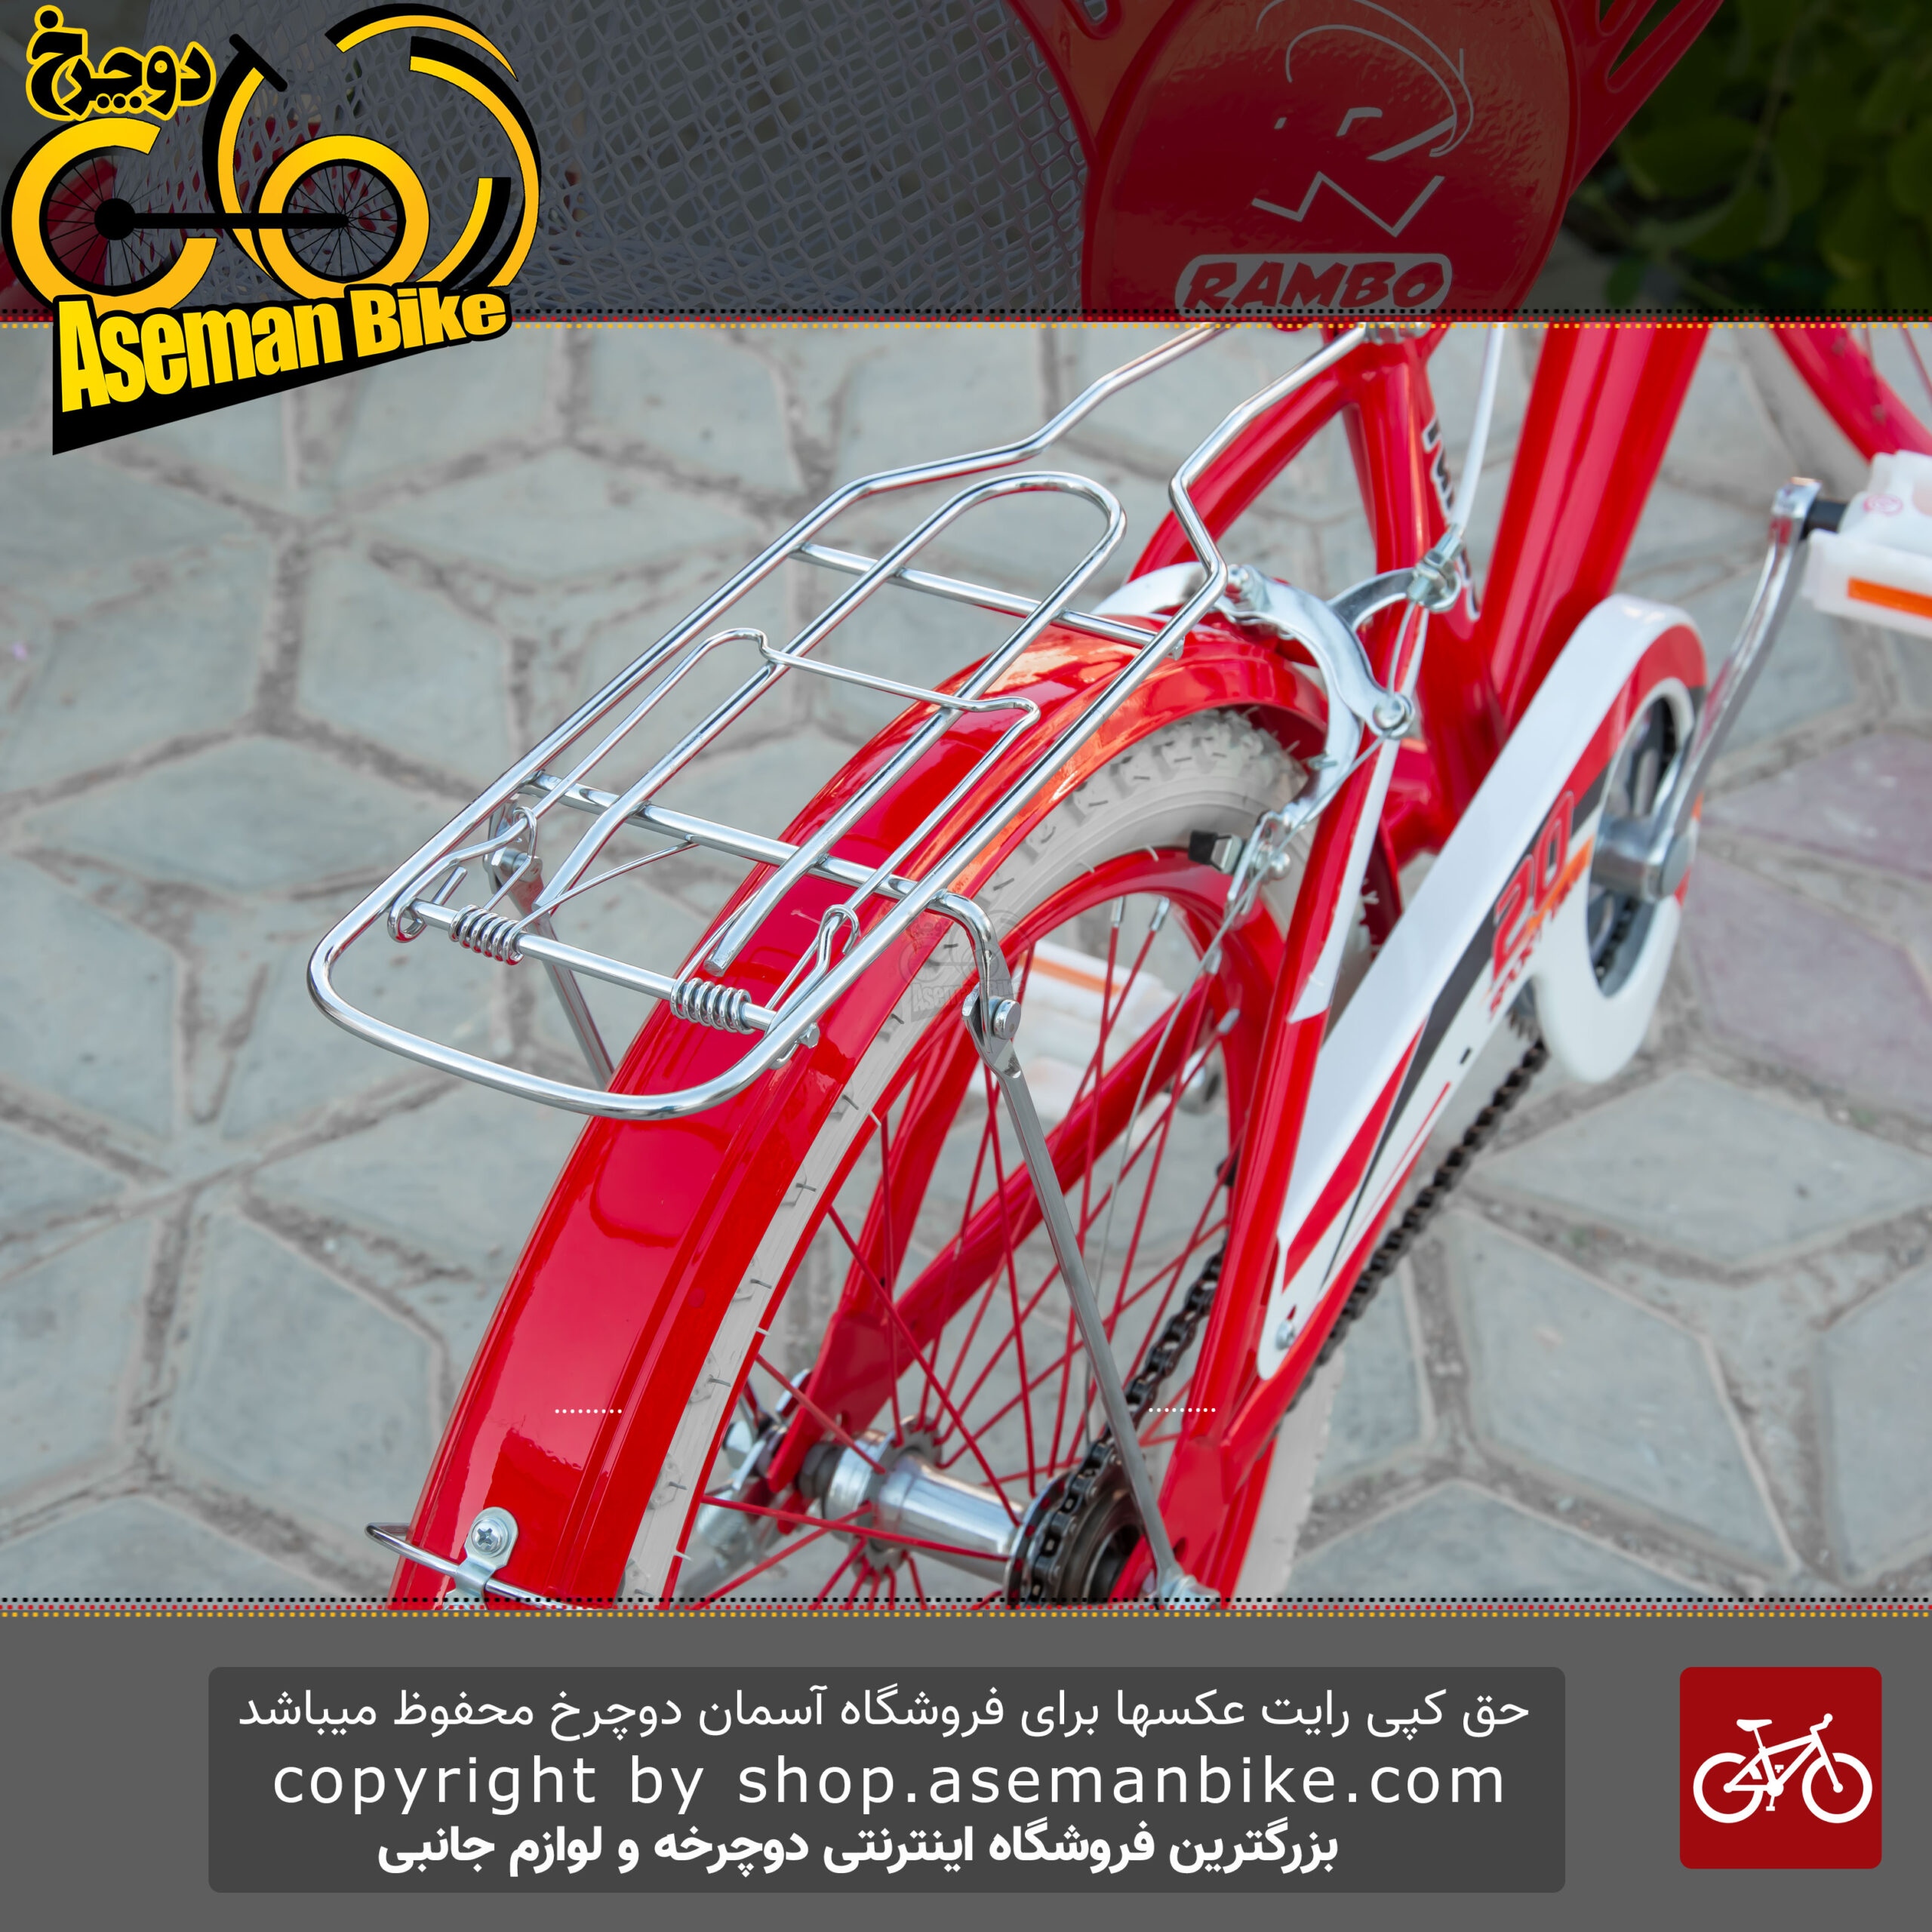 دوچرخه دخترانه رامبو سایز 20 مدل ریموند سفید قرمز RAMBO Raymond Bicycle Size 20 Kids Girl White Red